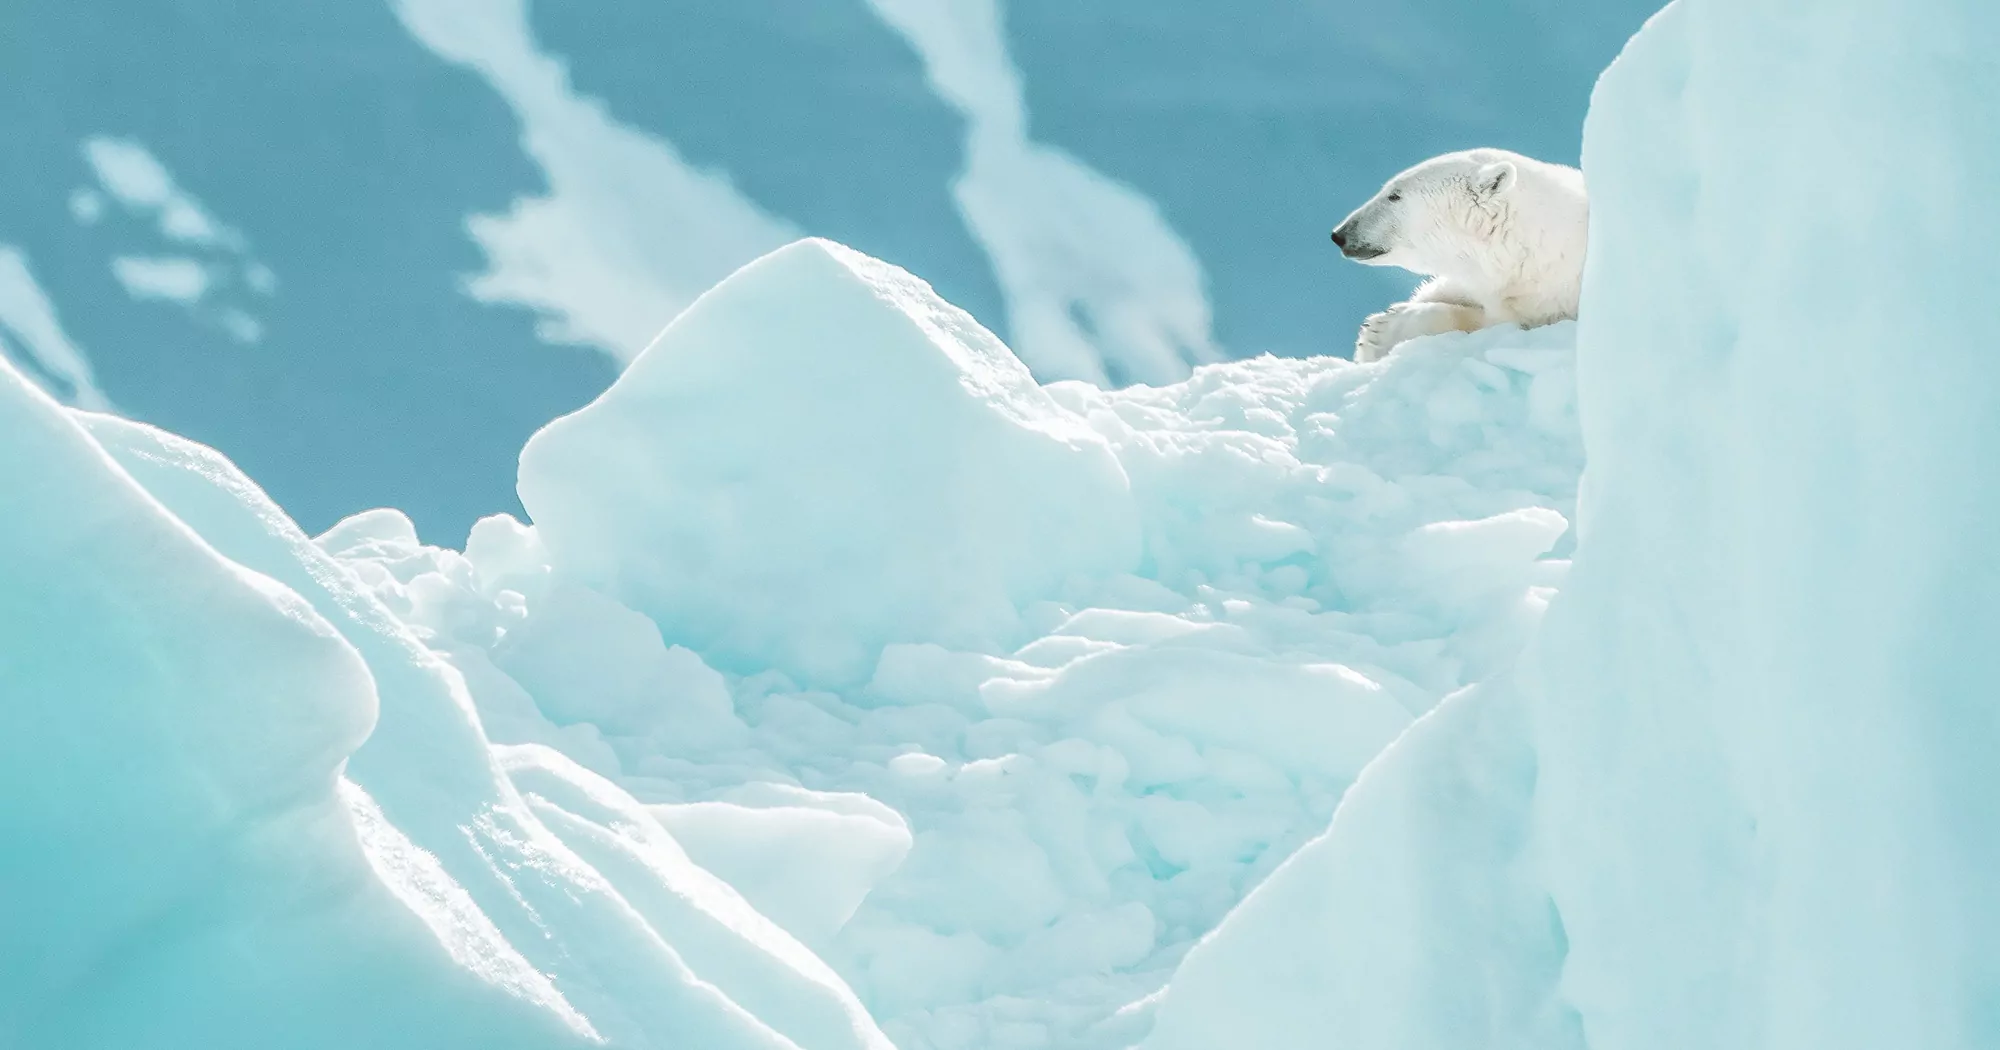 Urso polar entre geleiras no Ártico